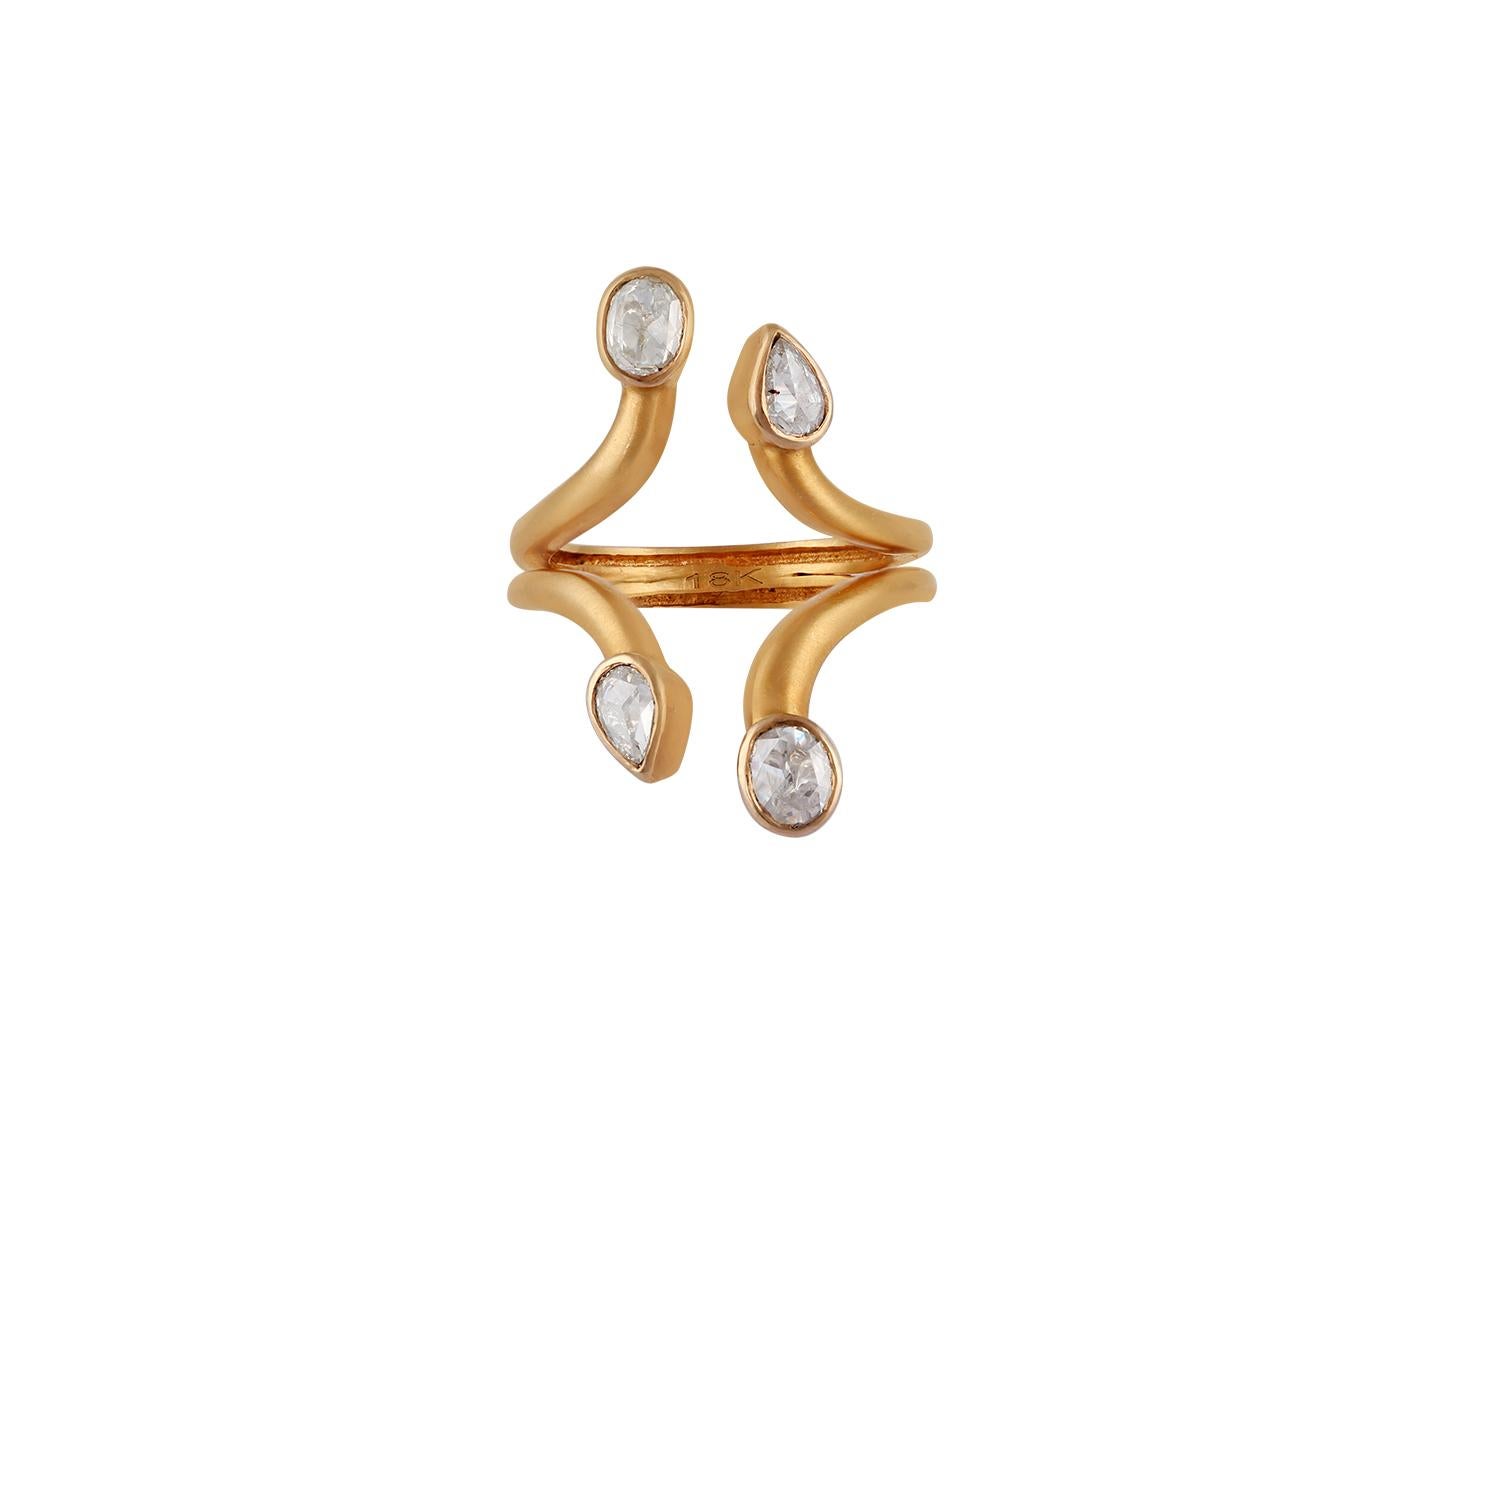 A propos de l'anneau de diamants 
Coupe de la rose blanche  Diamants : 0,65 carat
Or jaune mat : 4.8 Gm

Chaque diamant est serti à la main.